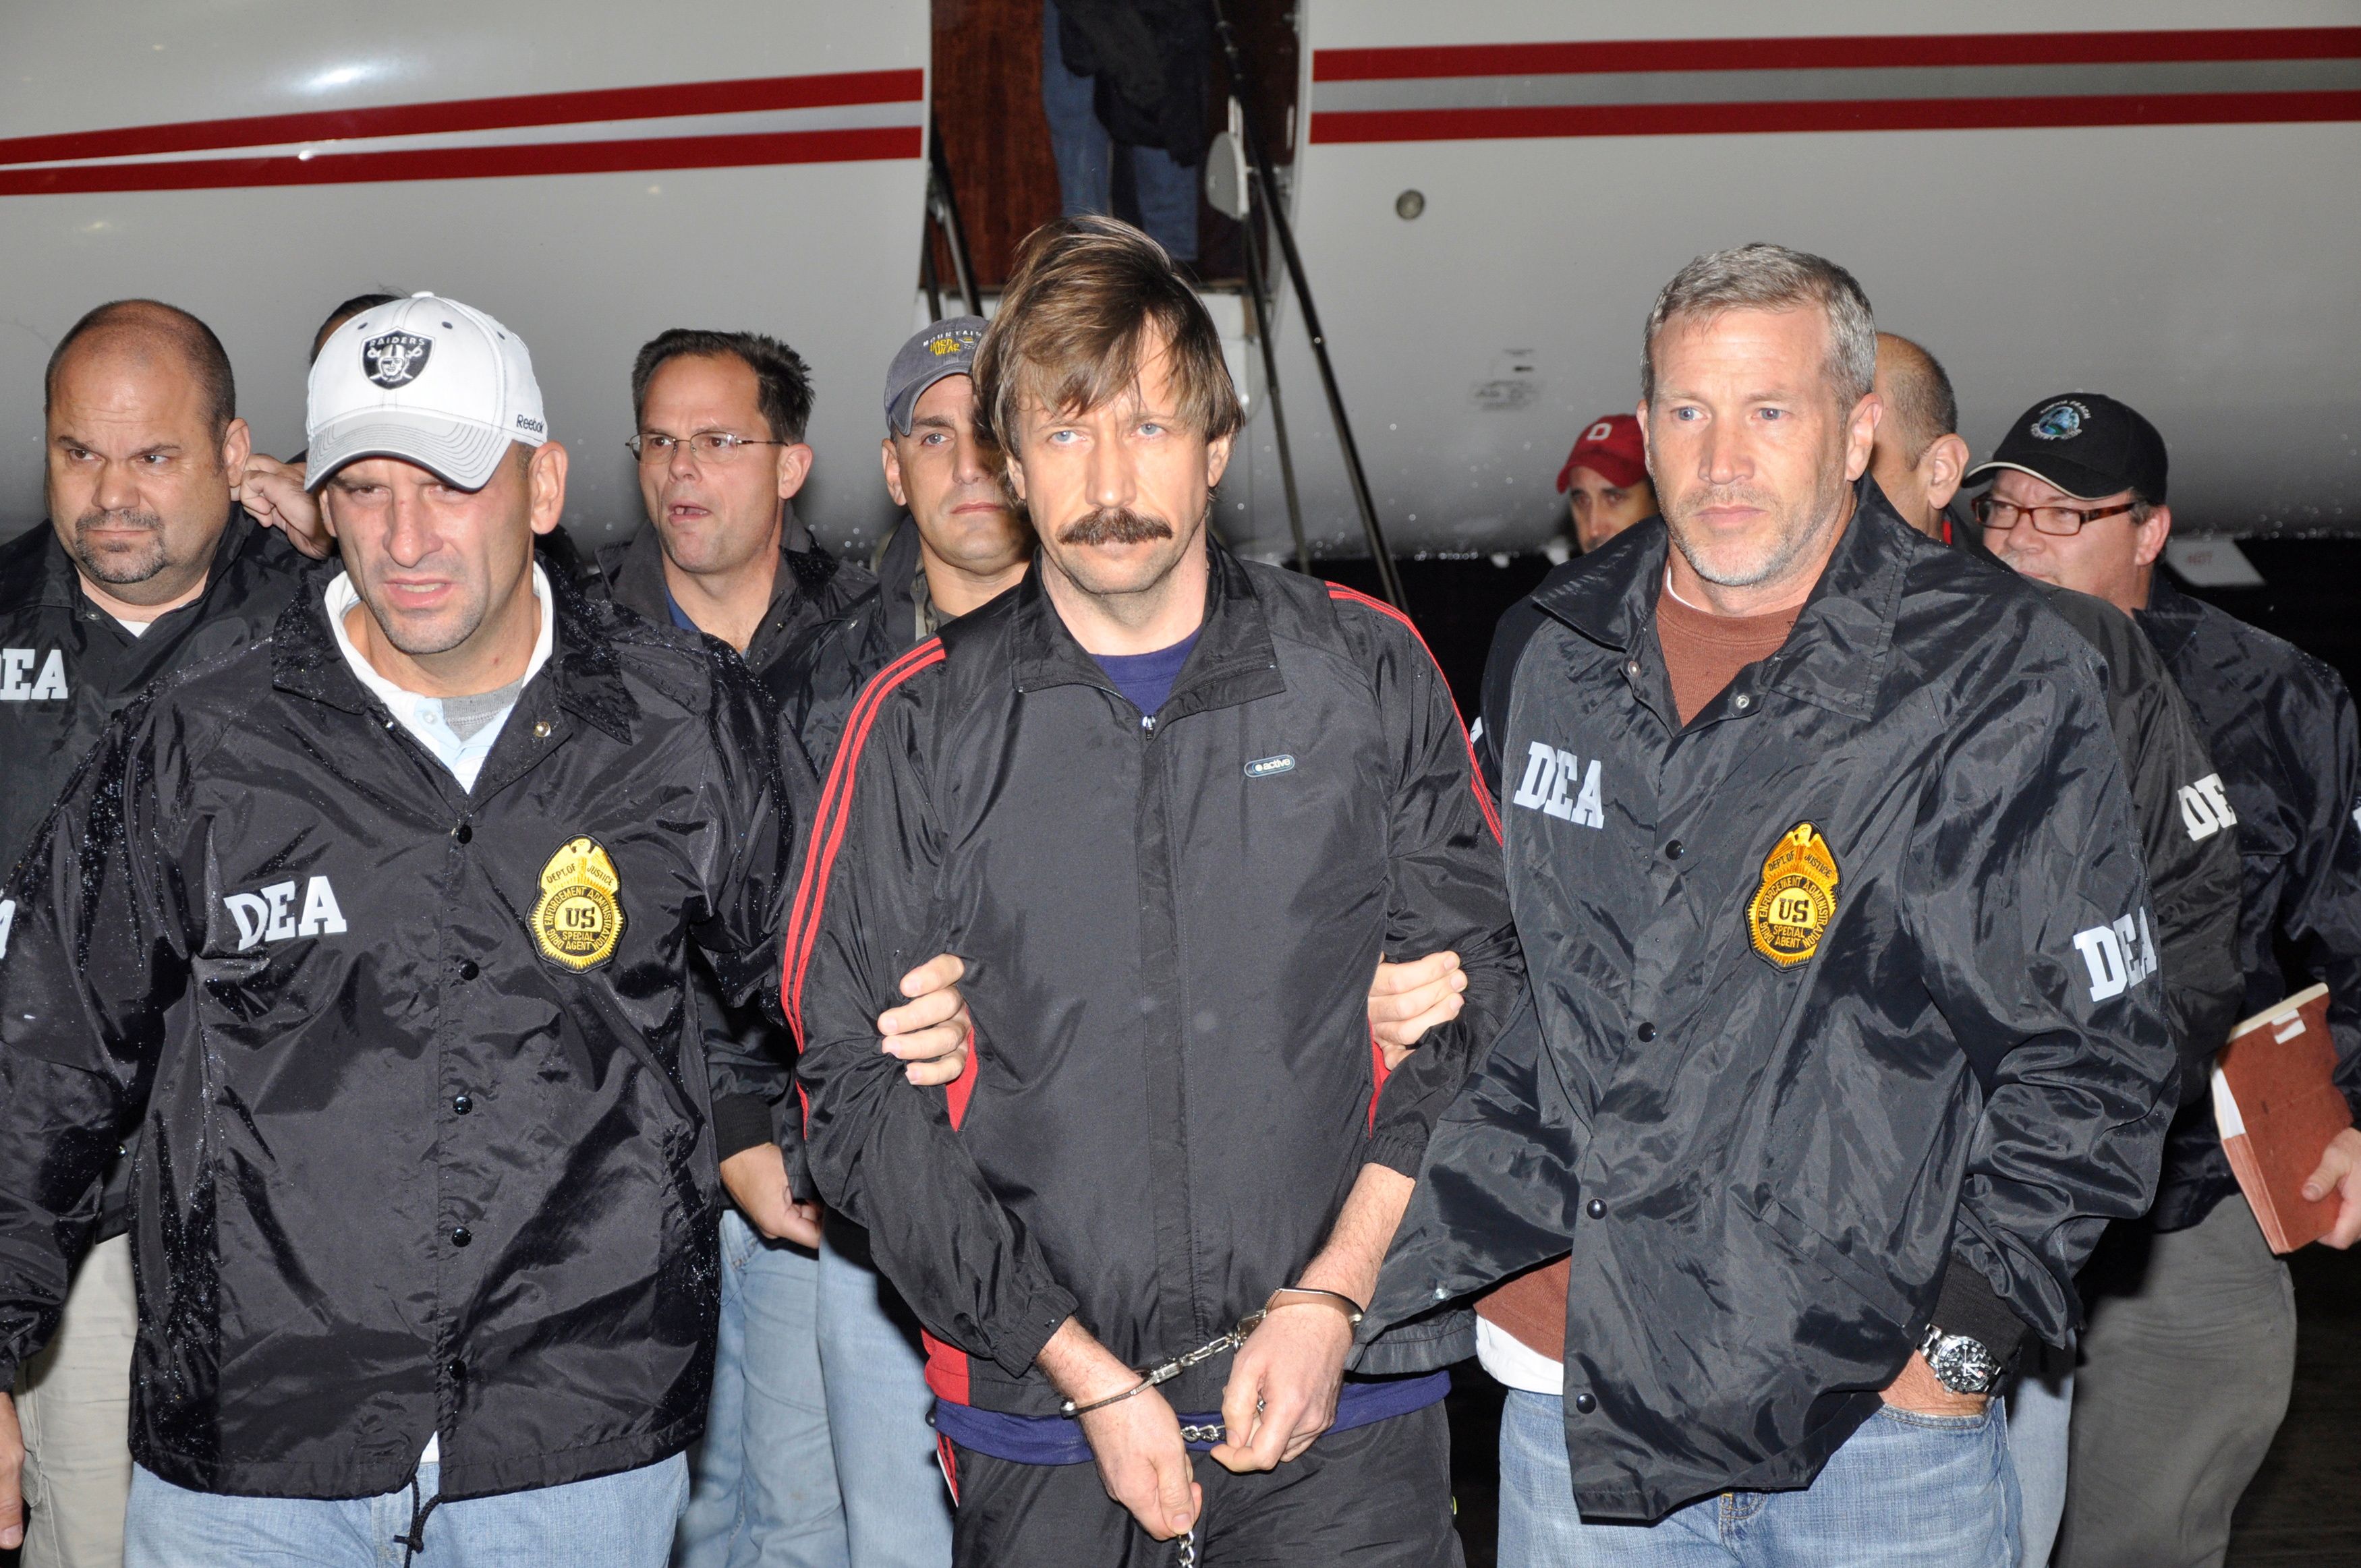 FOTO DE ARCHIVO: El traficante de armas ruso Viktor Bout es escoltado por agentes de la Administración para el Control de Drogas (DEA) tras llegar al aeropuerto del condado de Westchester en White Plains, Nueva York, el 16 de noviembre de 2010 (Reuters)